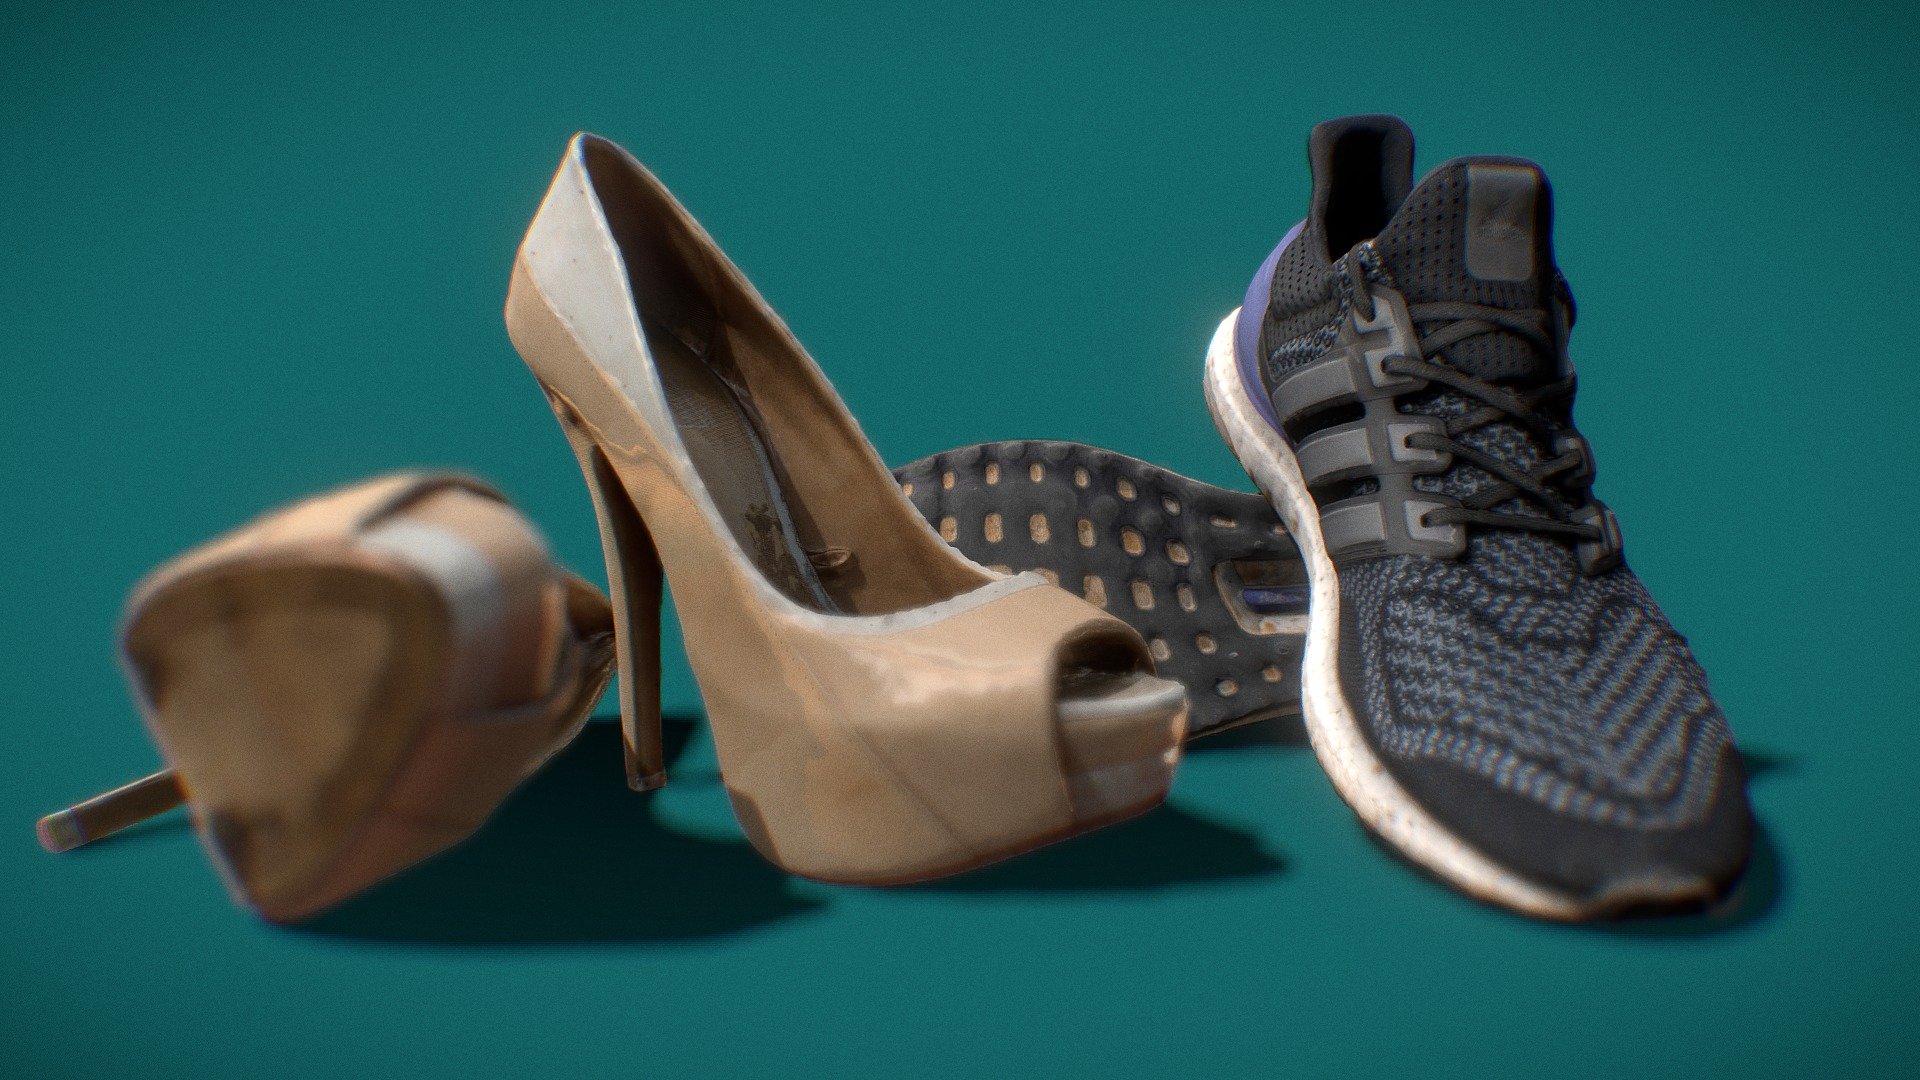 HIgh Heels &amp; Running Shoes . Photogrammetry 3d model